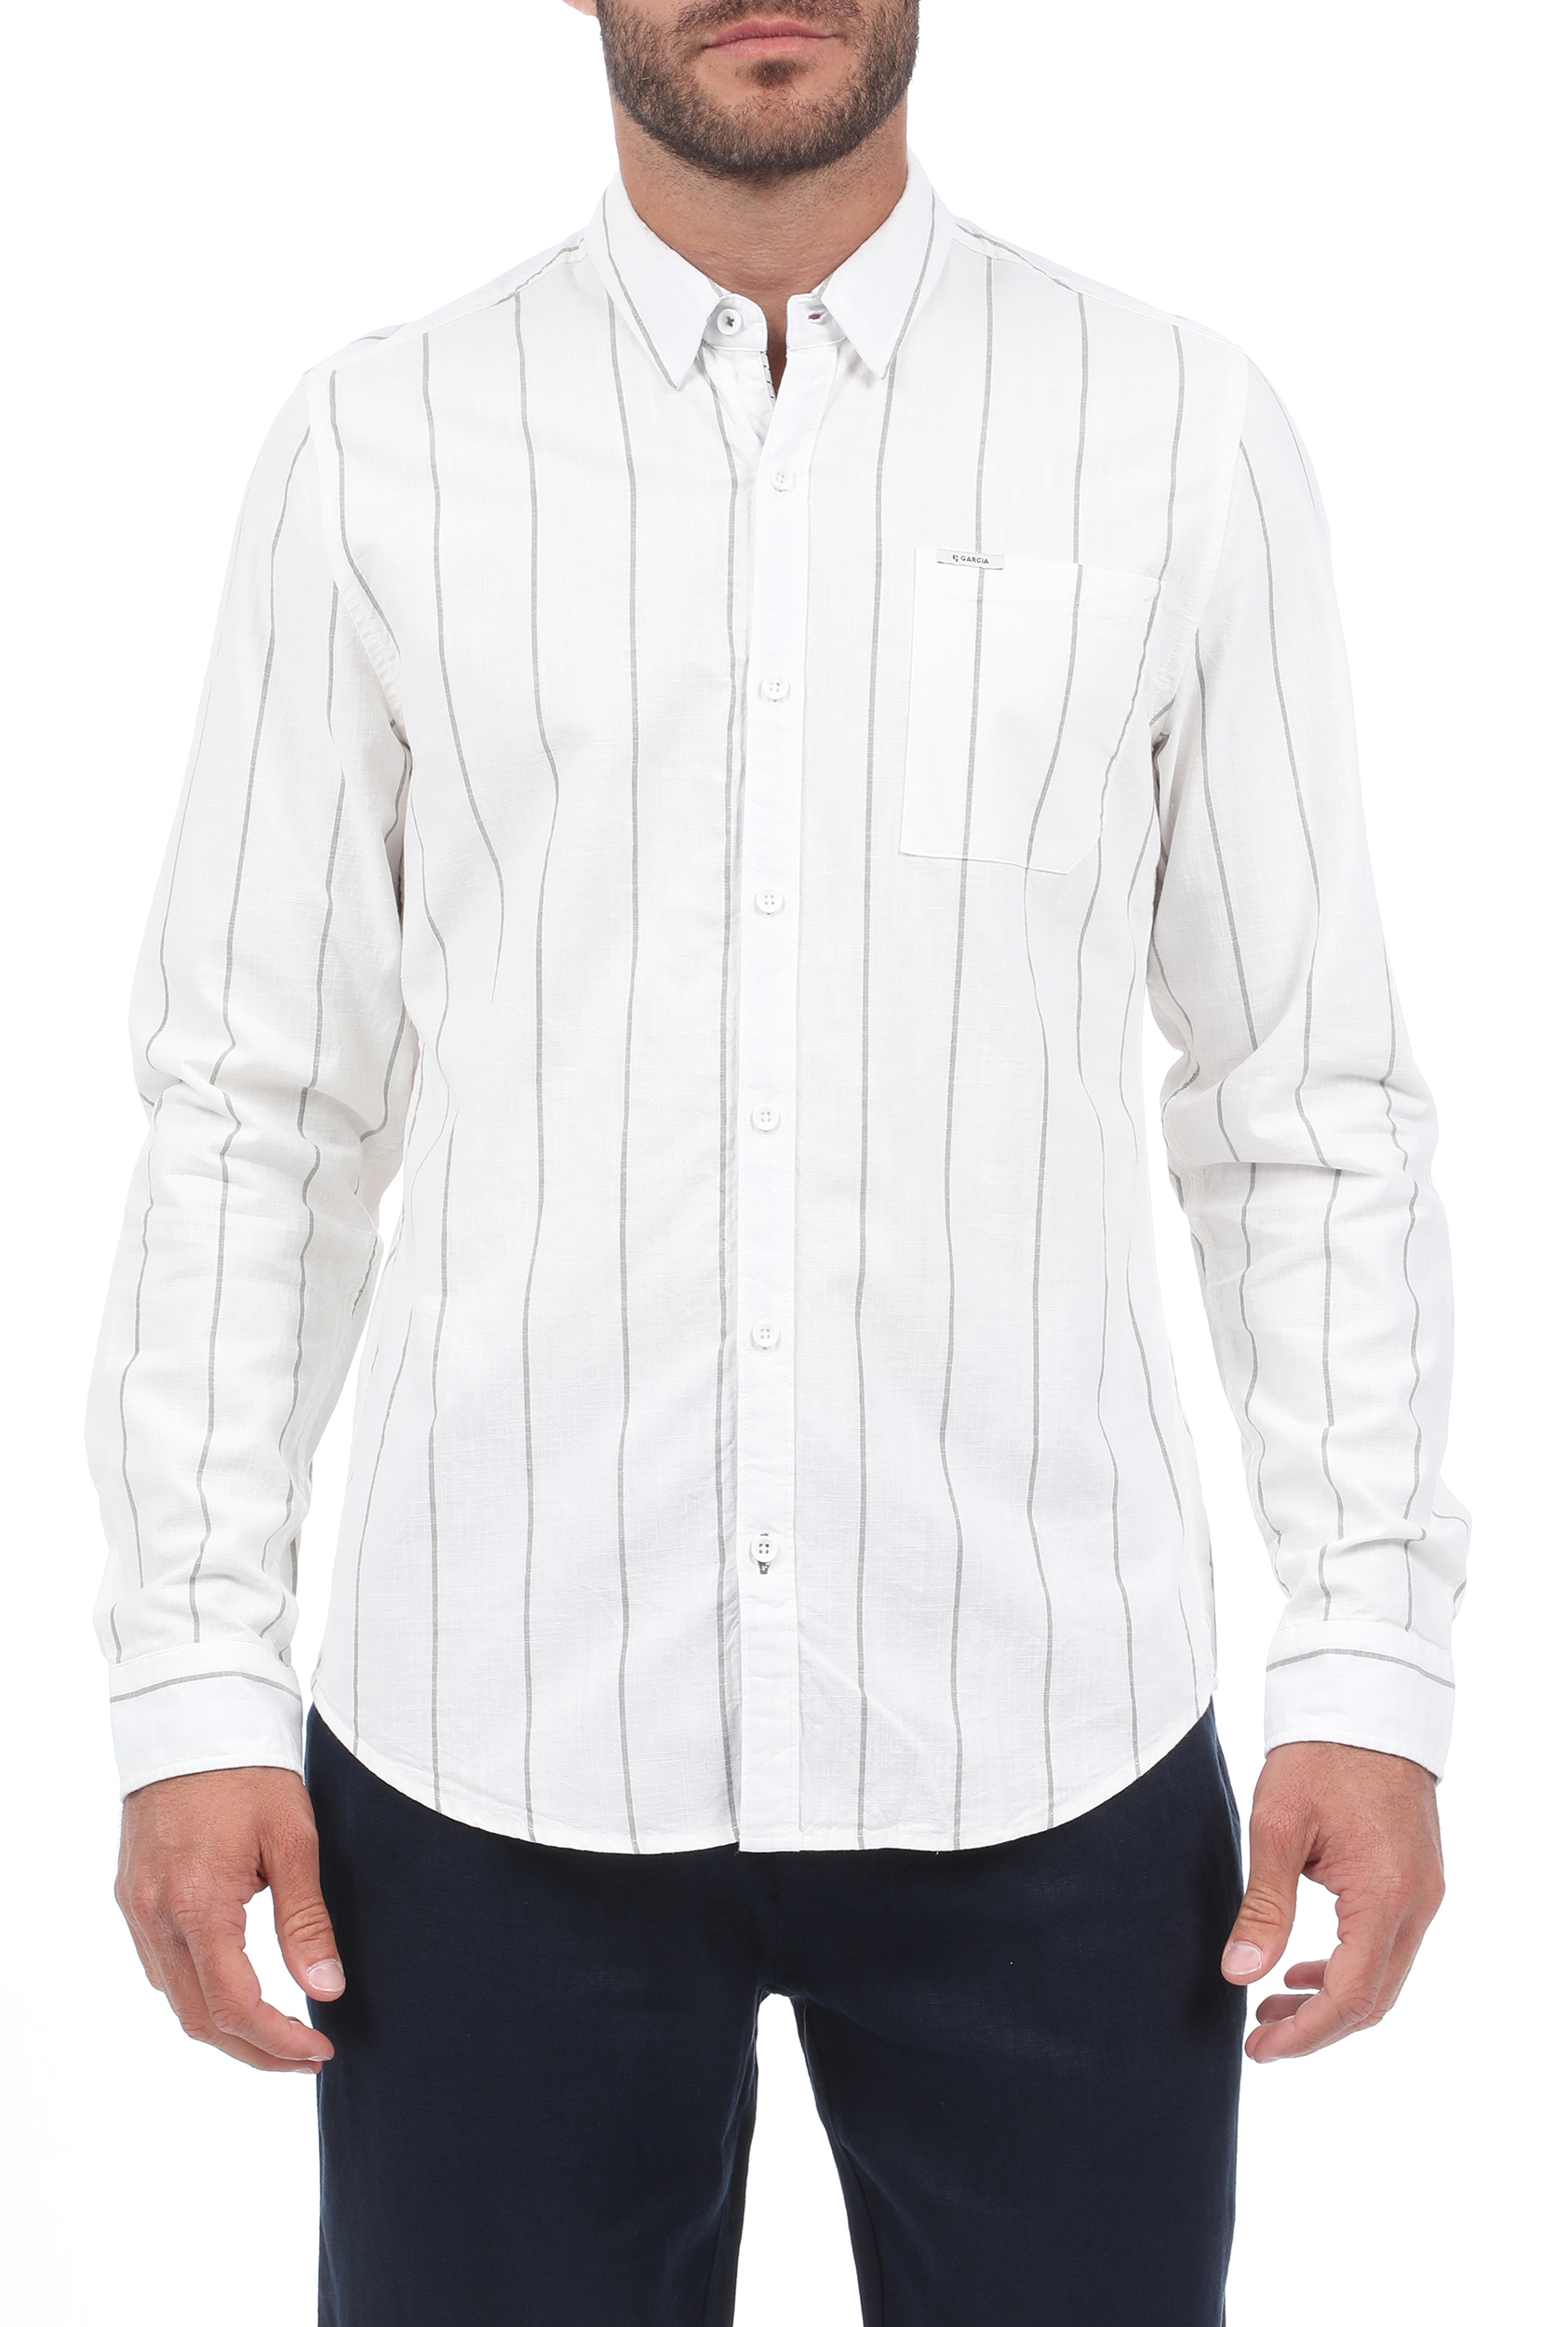 Ανδρικά/Ρούχα/Πουκάμισα/Μακρυμάνικα GARCIA JEANS - Ανδρικό πουκάμισο GARCIA JEANS λευκό μπλε